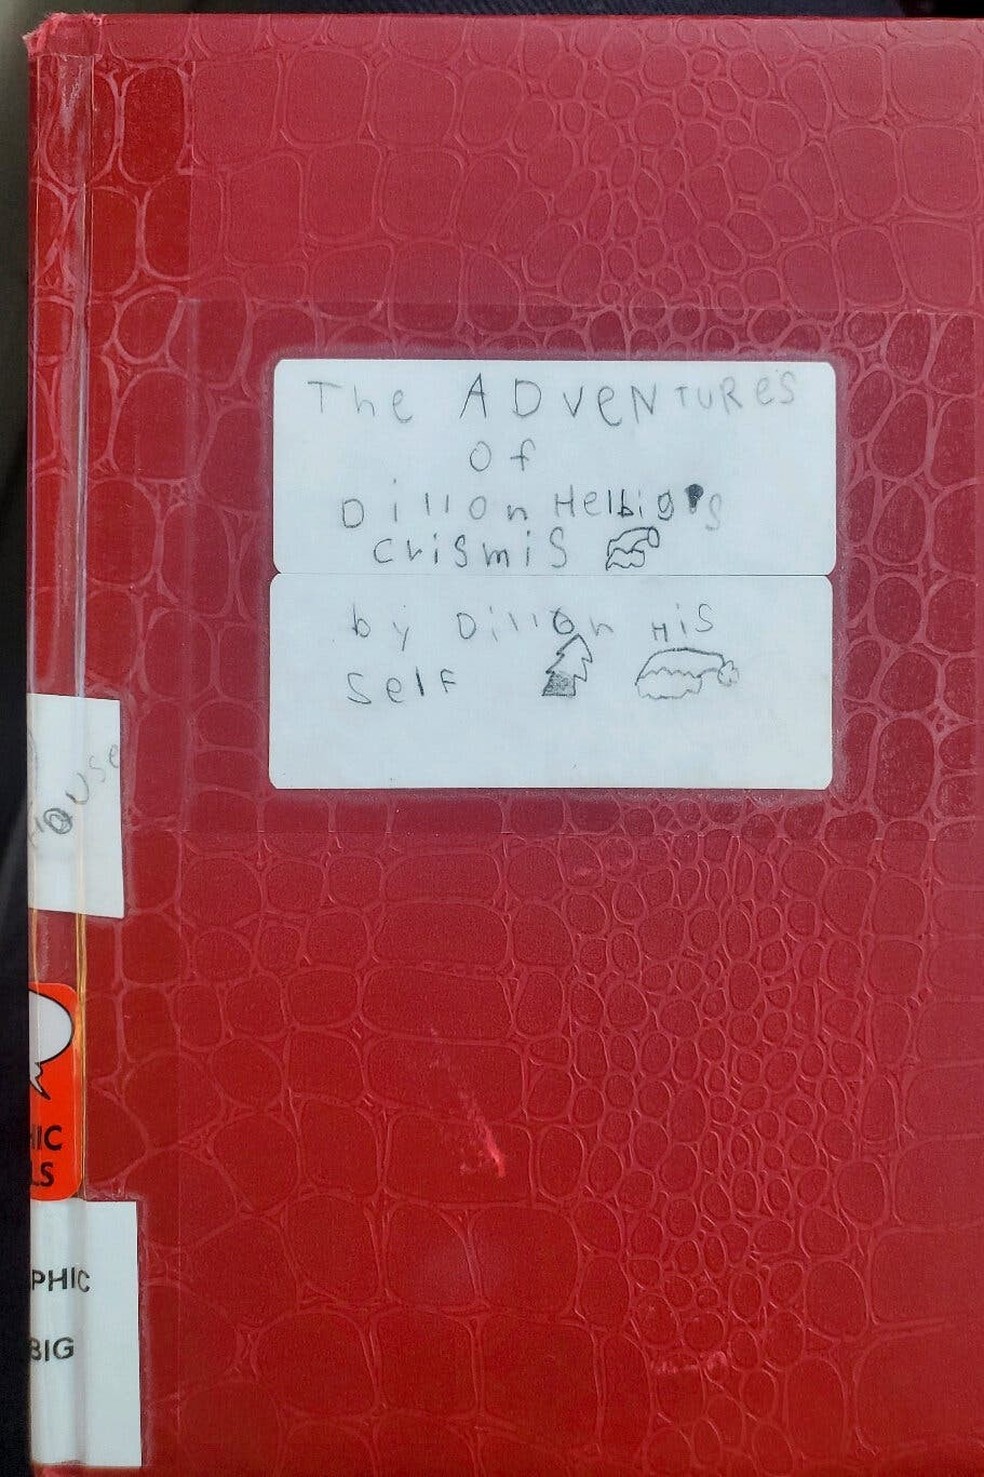 asomadetodosafetos.com - Menino de 8 anos coloca seu livro escrito à mão em estante de biblioteca faz sucesso com lista de espera de 5 anos